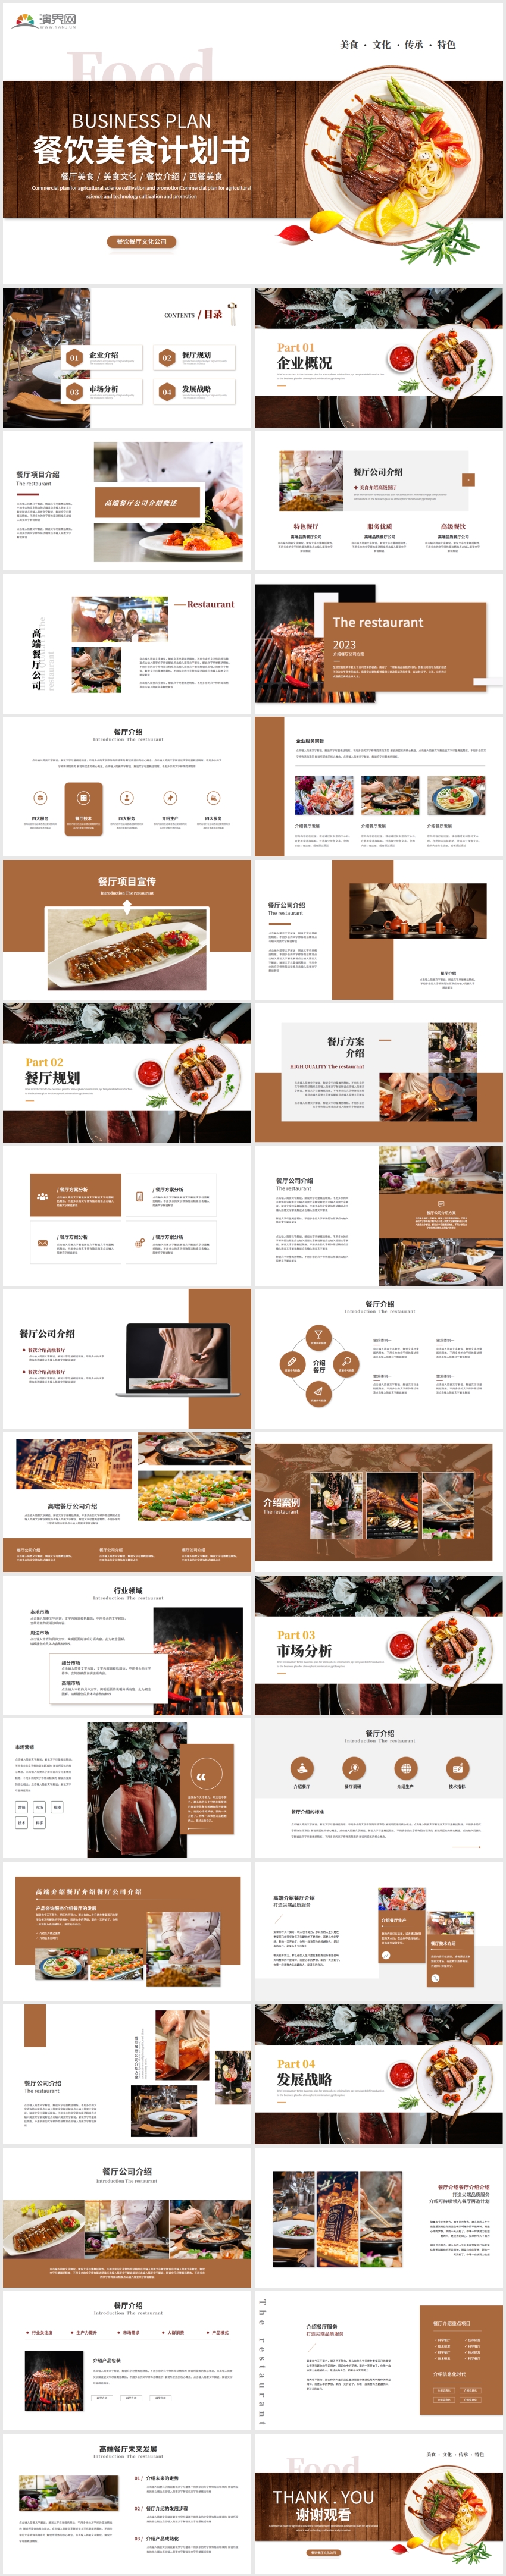 简约餐饮美食商业计划书餐厅介绍企业介绍PPT模板